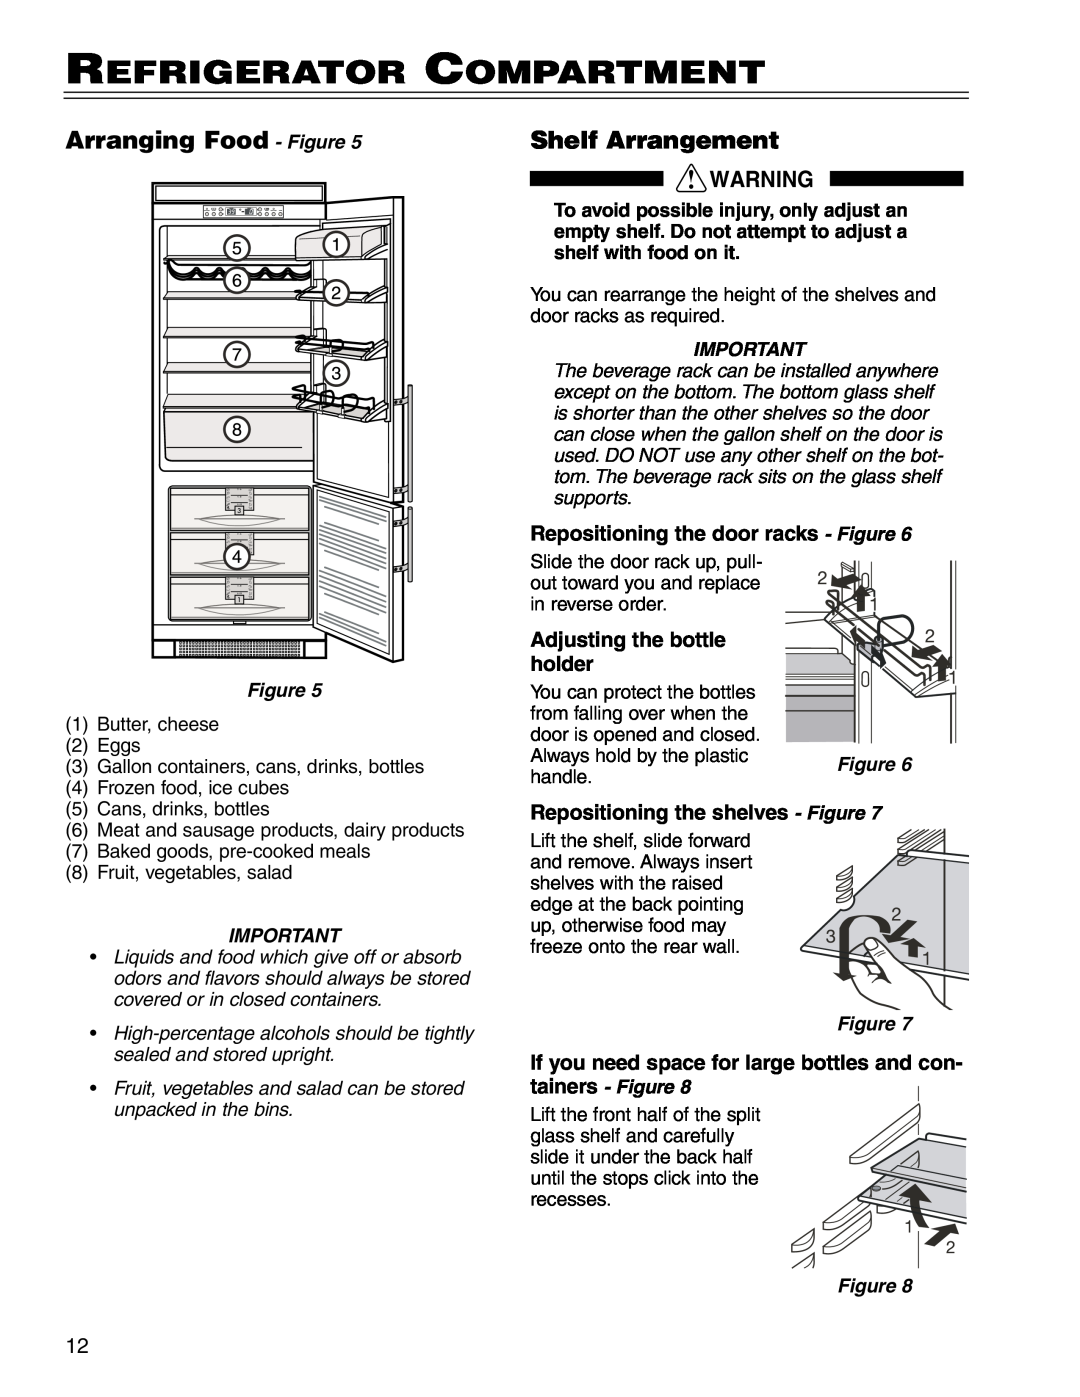 Liebherr CS 16 Refrigerator Compartment, Arranging Food - Figure, Shelf Arrangement, Adjusting the bottle, holder 